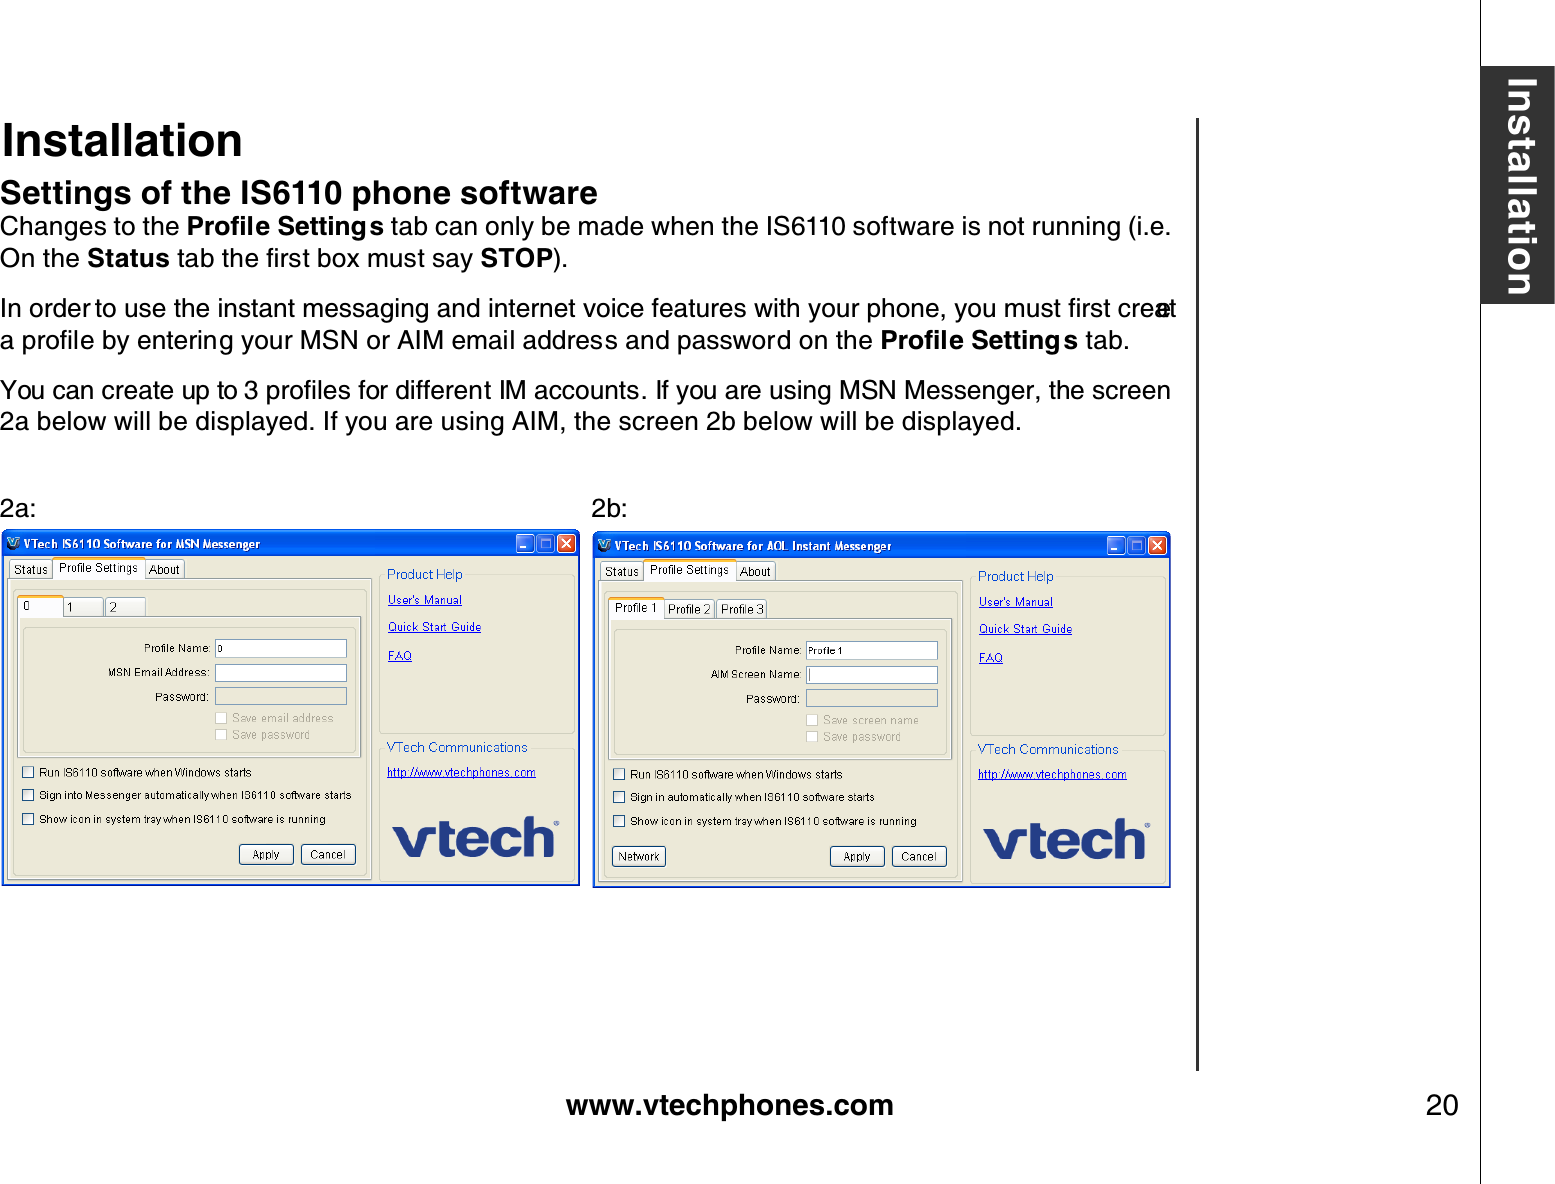 www.vtechphones.com 20InstallationSettings of the IS6110 phone softwareChanges to the 2TQſNG5GVVKPIU tab can only be made when the IS6110 software is not running (i.e. On the StatusVCDVJGſTUVDQZOWUVUC[STOP).+PQTFGTVQWUGVJGKPUVCPVOGUUCIKPICPFKPVGTPGVXQKEGHGCVWTGUYKVJ[QWTRJQPG[QWOWUVſTUVETGCVGCRTQſNGD[GPVGTKPI[QWT/50QT#+/GOCKNCFFTGUUCPFRCUUYQTFQPVJG2TQſNG5GVVKPI U tab.;QWECPETGCVGWRVQRTQſNGUHQTFKHHGTGPV+/CEEQWPVU+H[QWCTGWUKPI/50/GUUGPIGTVJGUETGGP2a below will be displayed. If you are using AIM, the screen 2b below will be displayed.2a:          2b:Installation